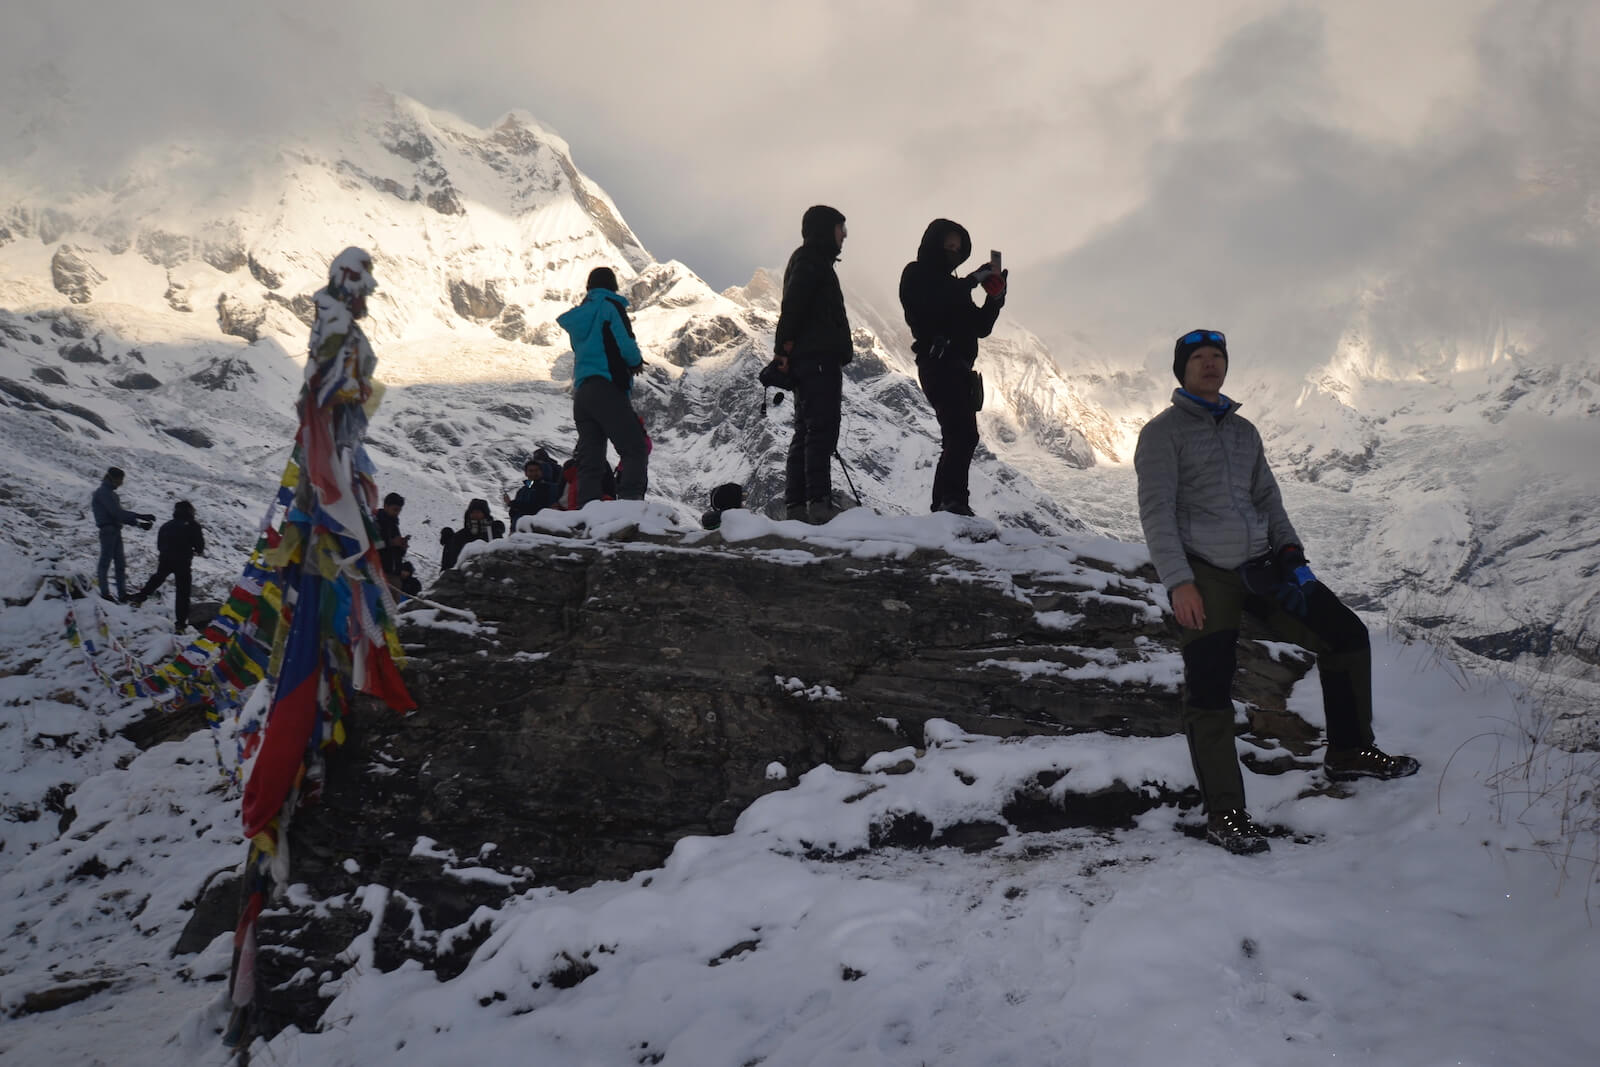 O poranku w Annapurna BC - fot. Jerzy Kostrzewa